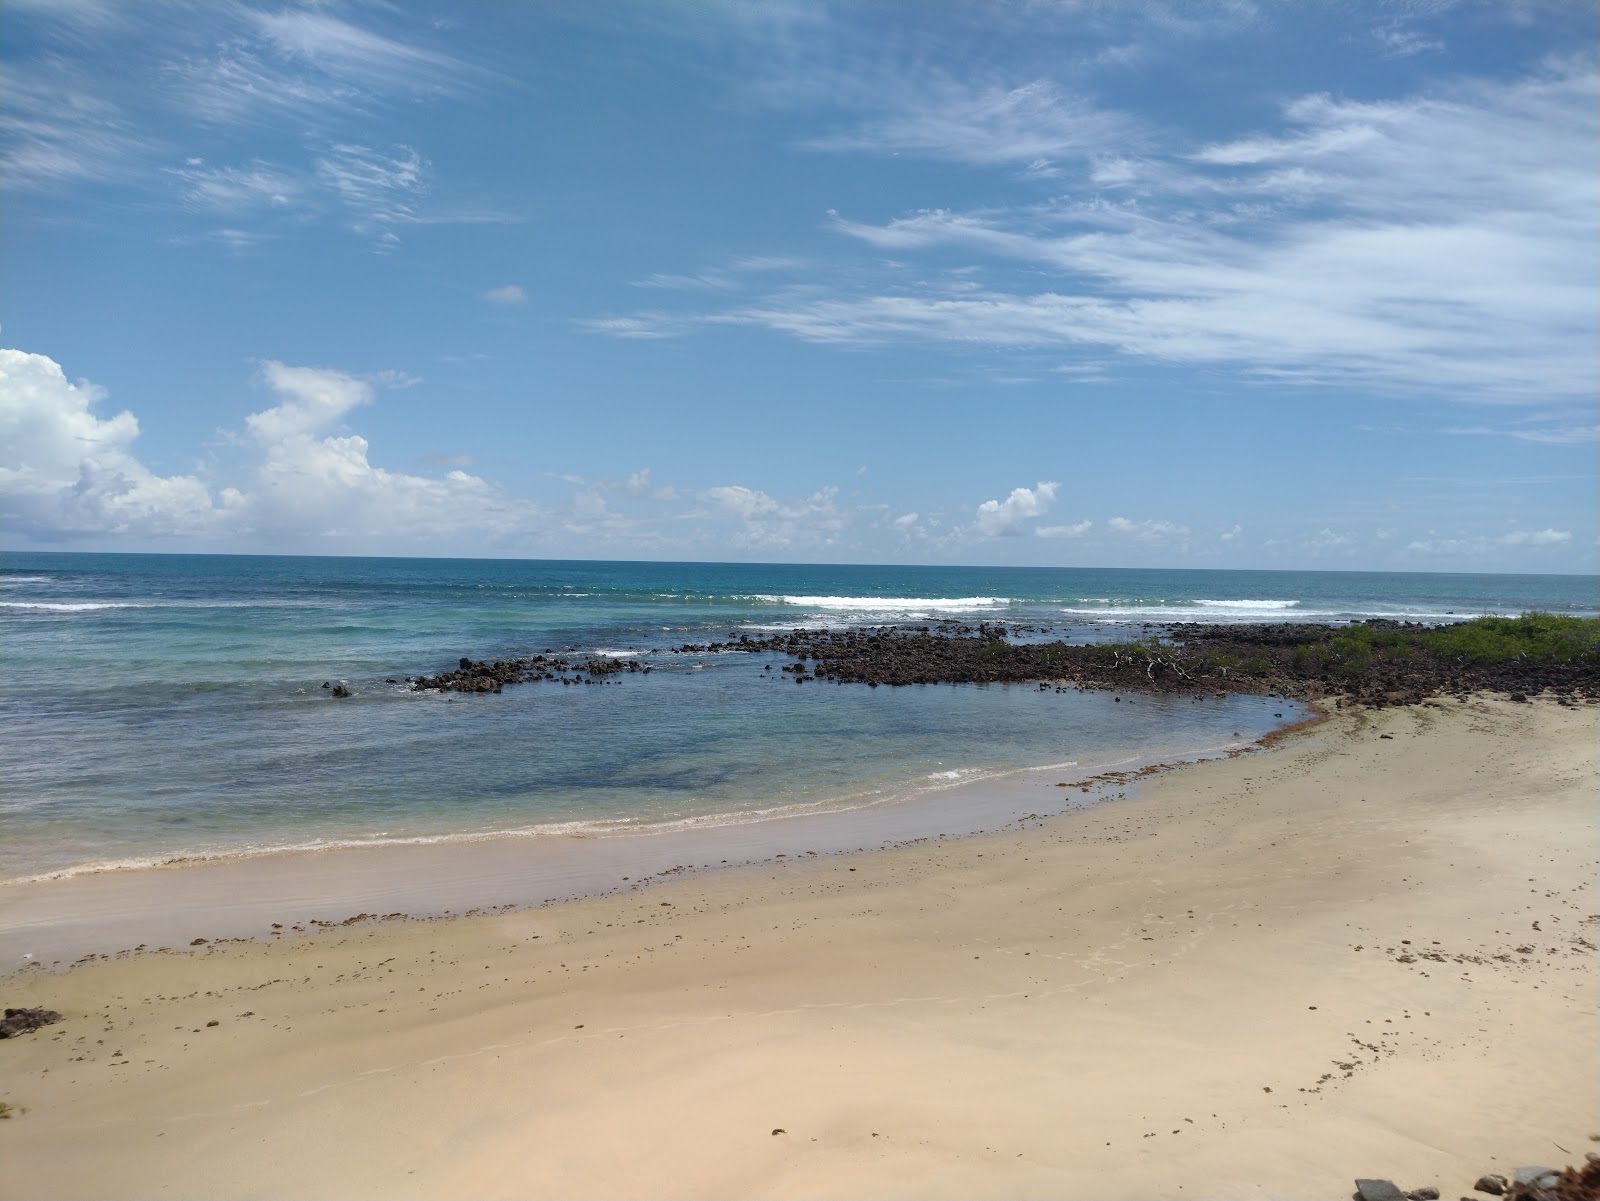 Zdjęcie Plaża Búzios - popularne miejsce wśród znawców relaksu